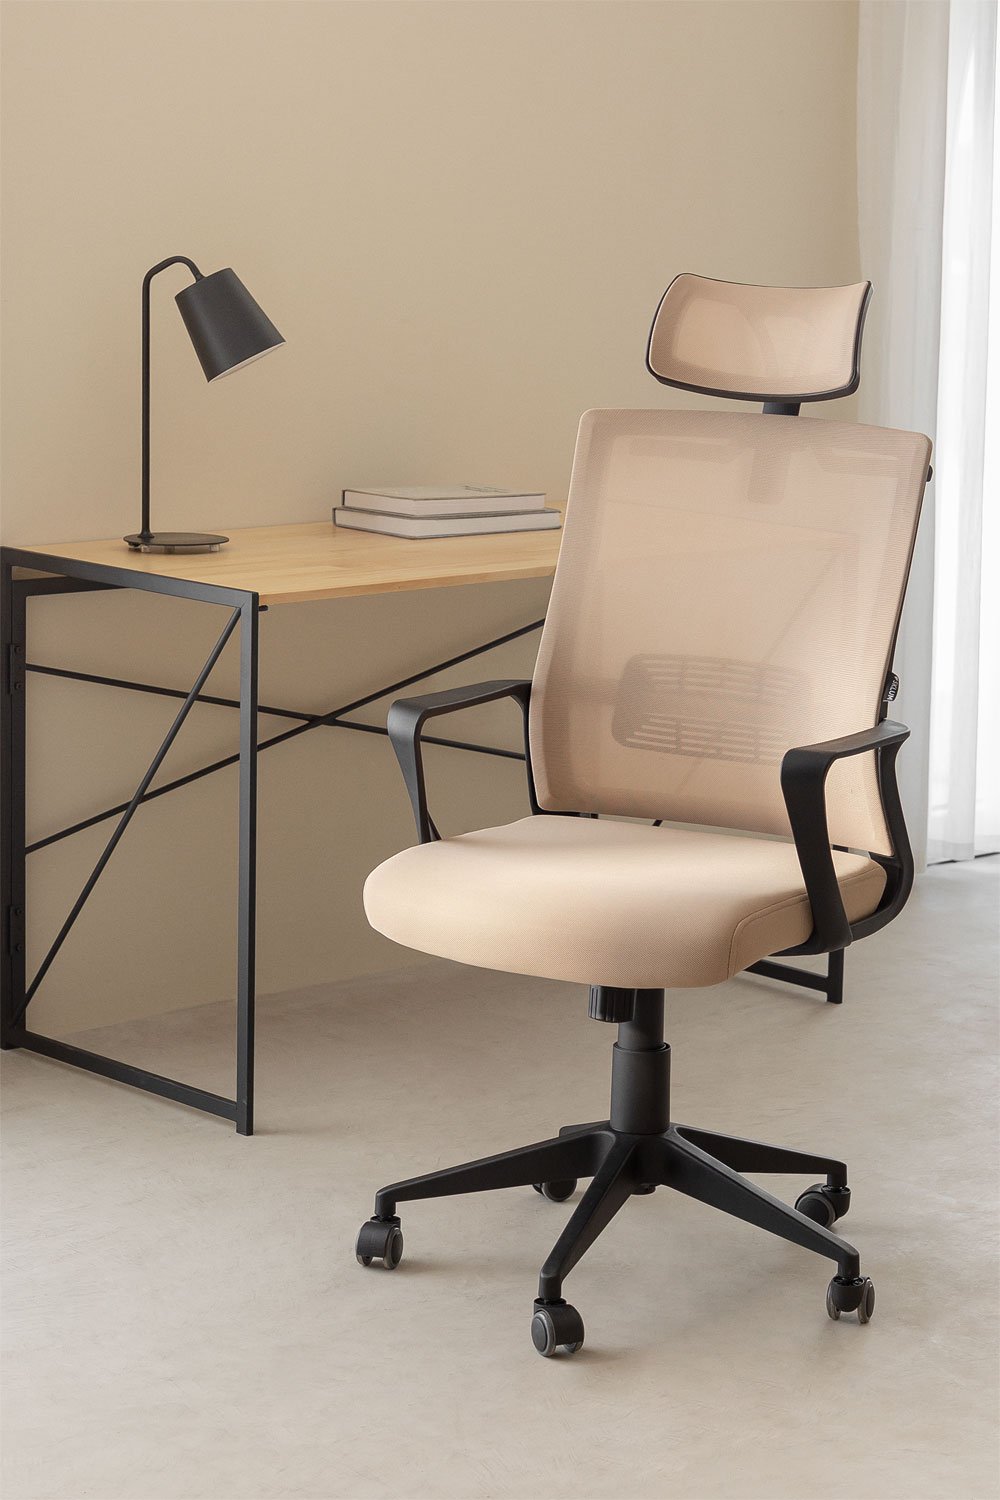 Krzesło biurowe z kółkami i zagłówkiem Teill Black, obrazek w galerii 1